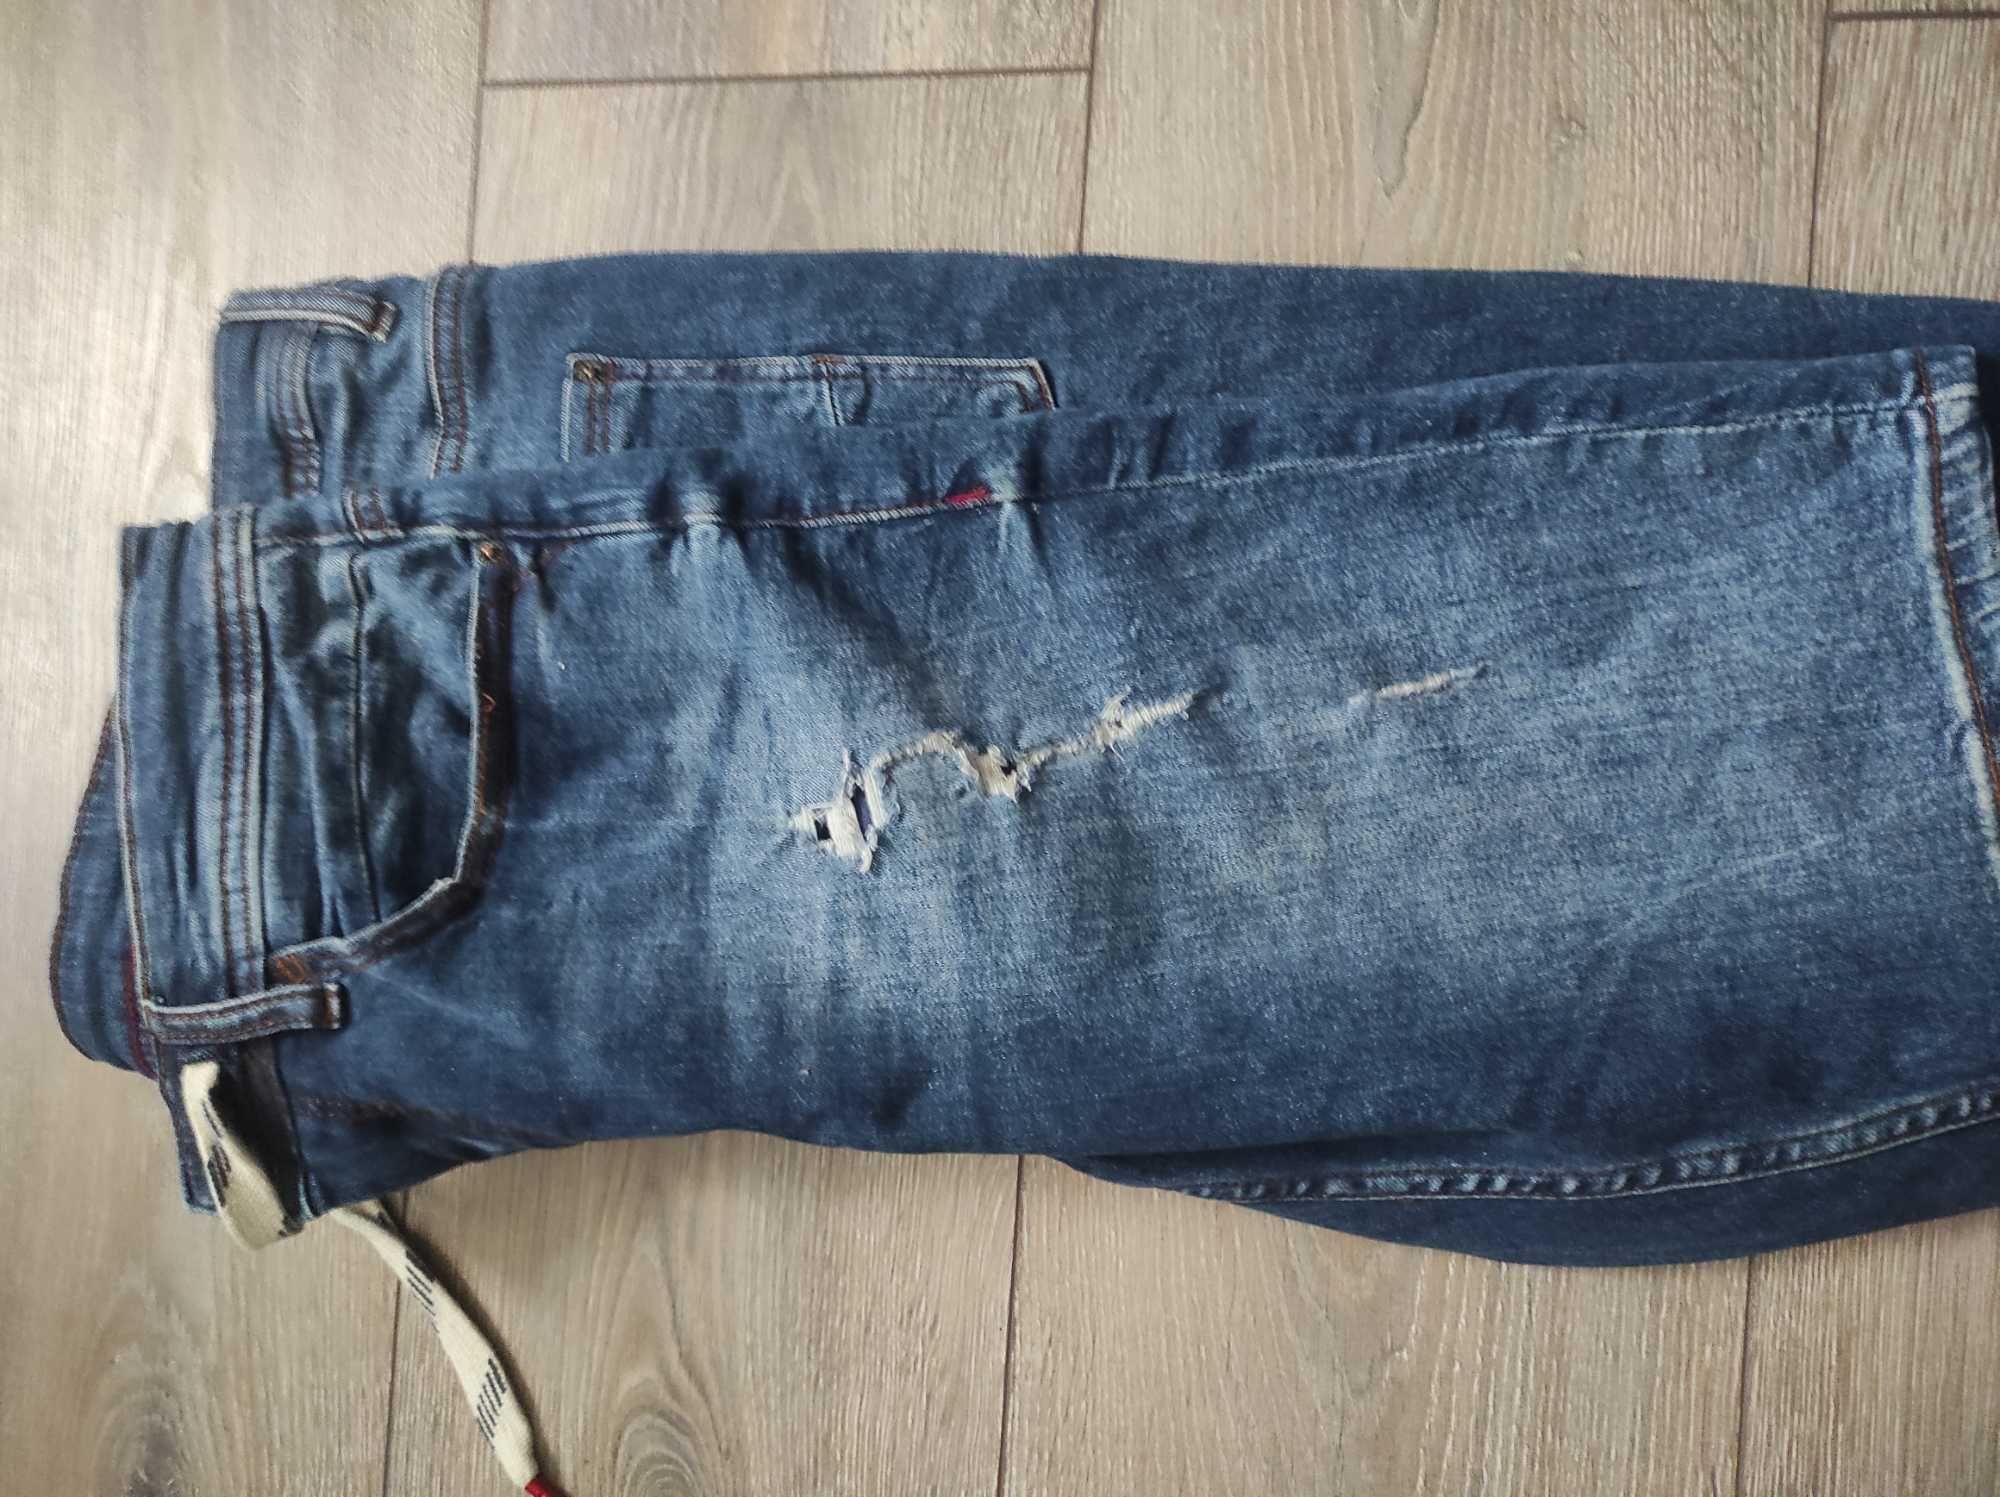 Мужские джинсовые шорты Cropp